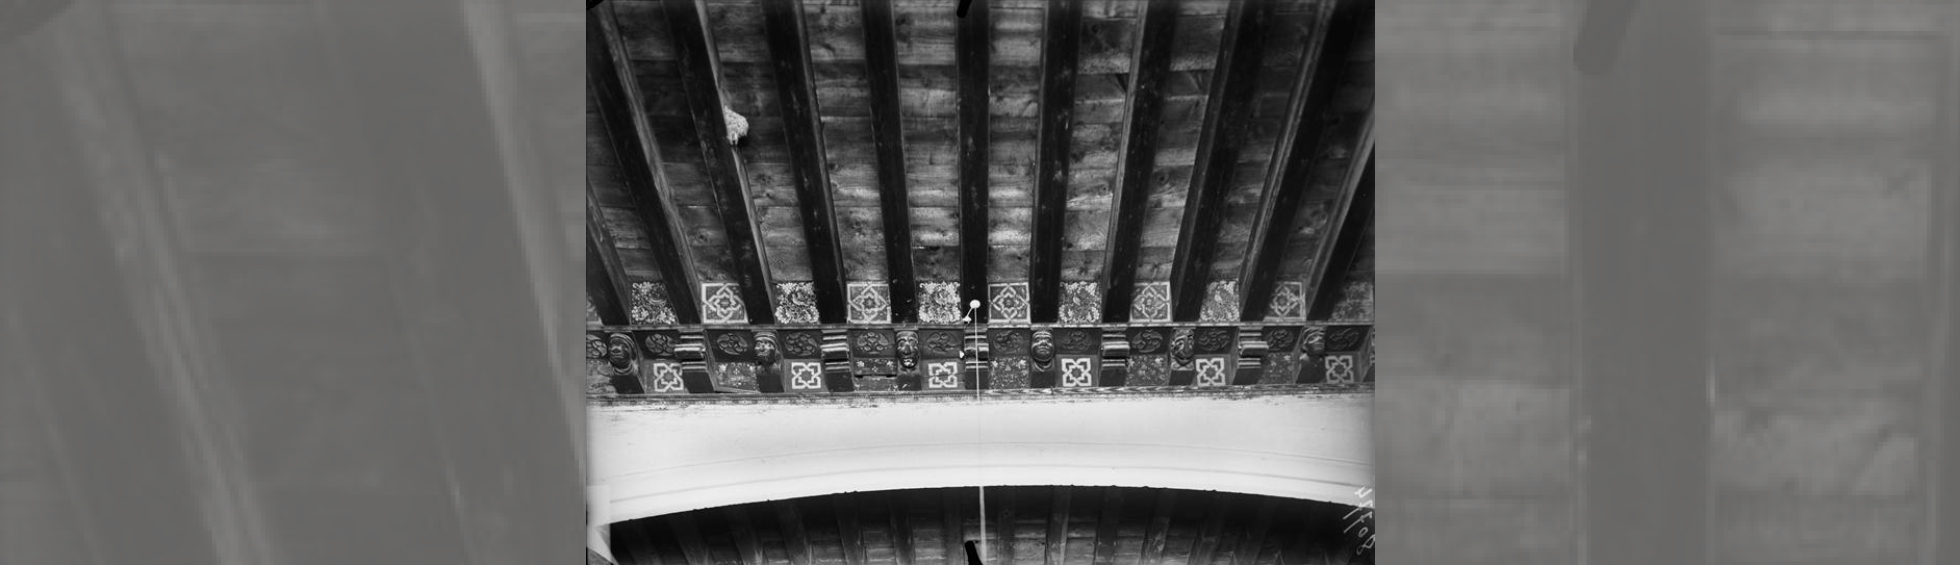 Plafond de la tribune peint avec des motifs géométriques  et  corbeaux de poutre à têtes sculptées